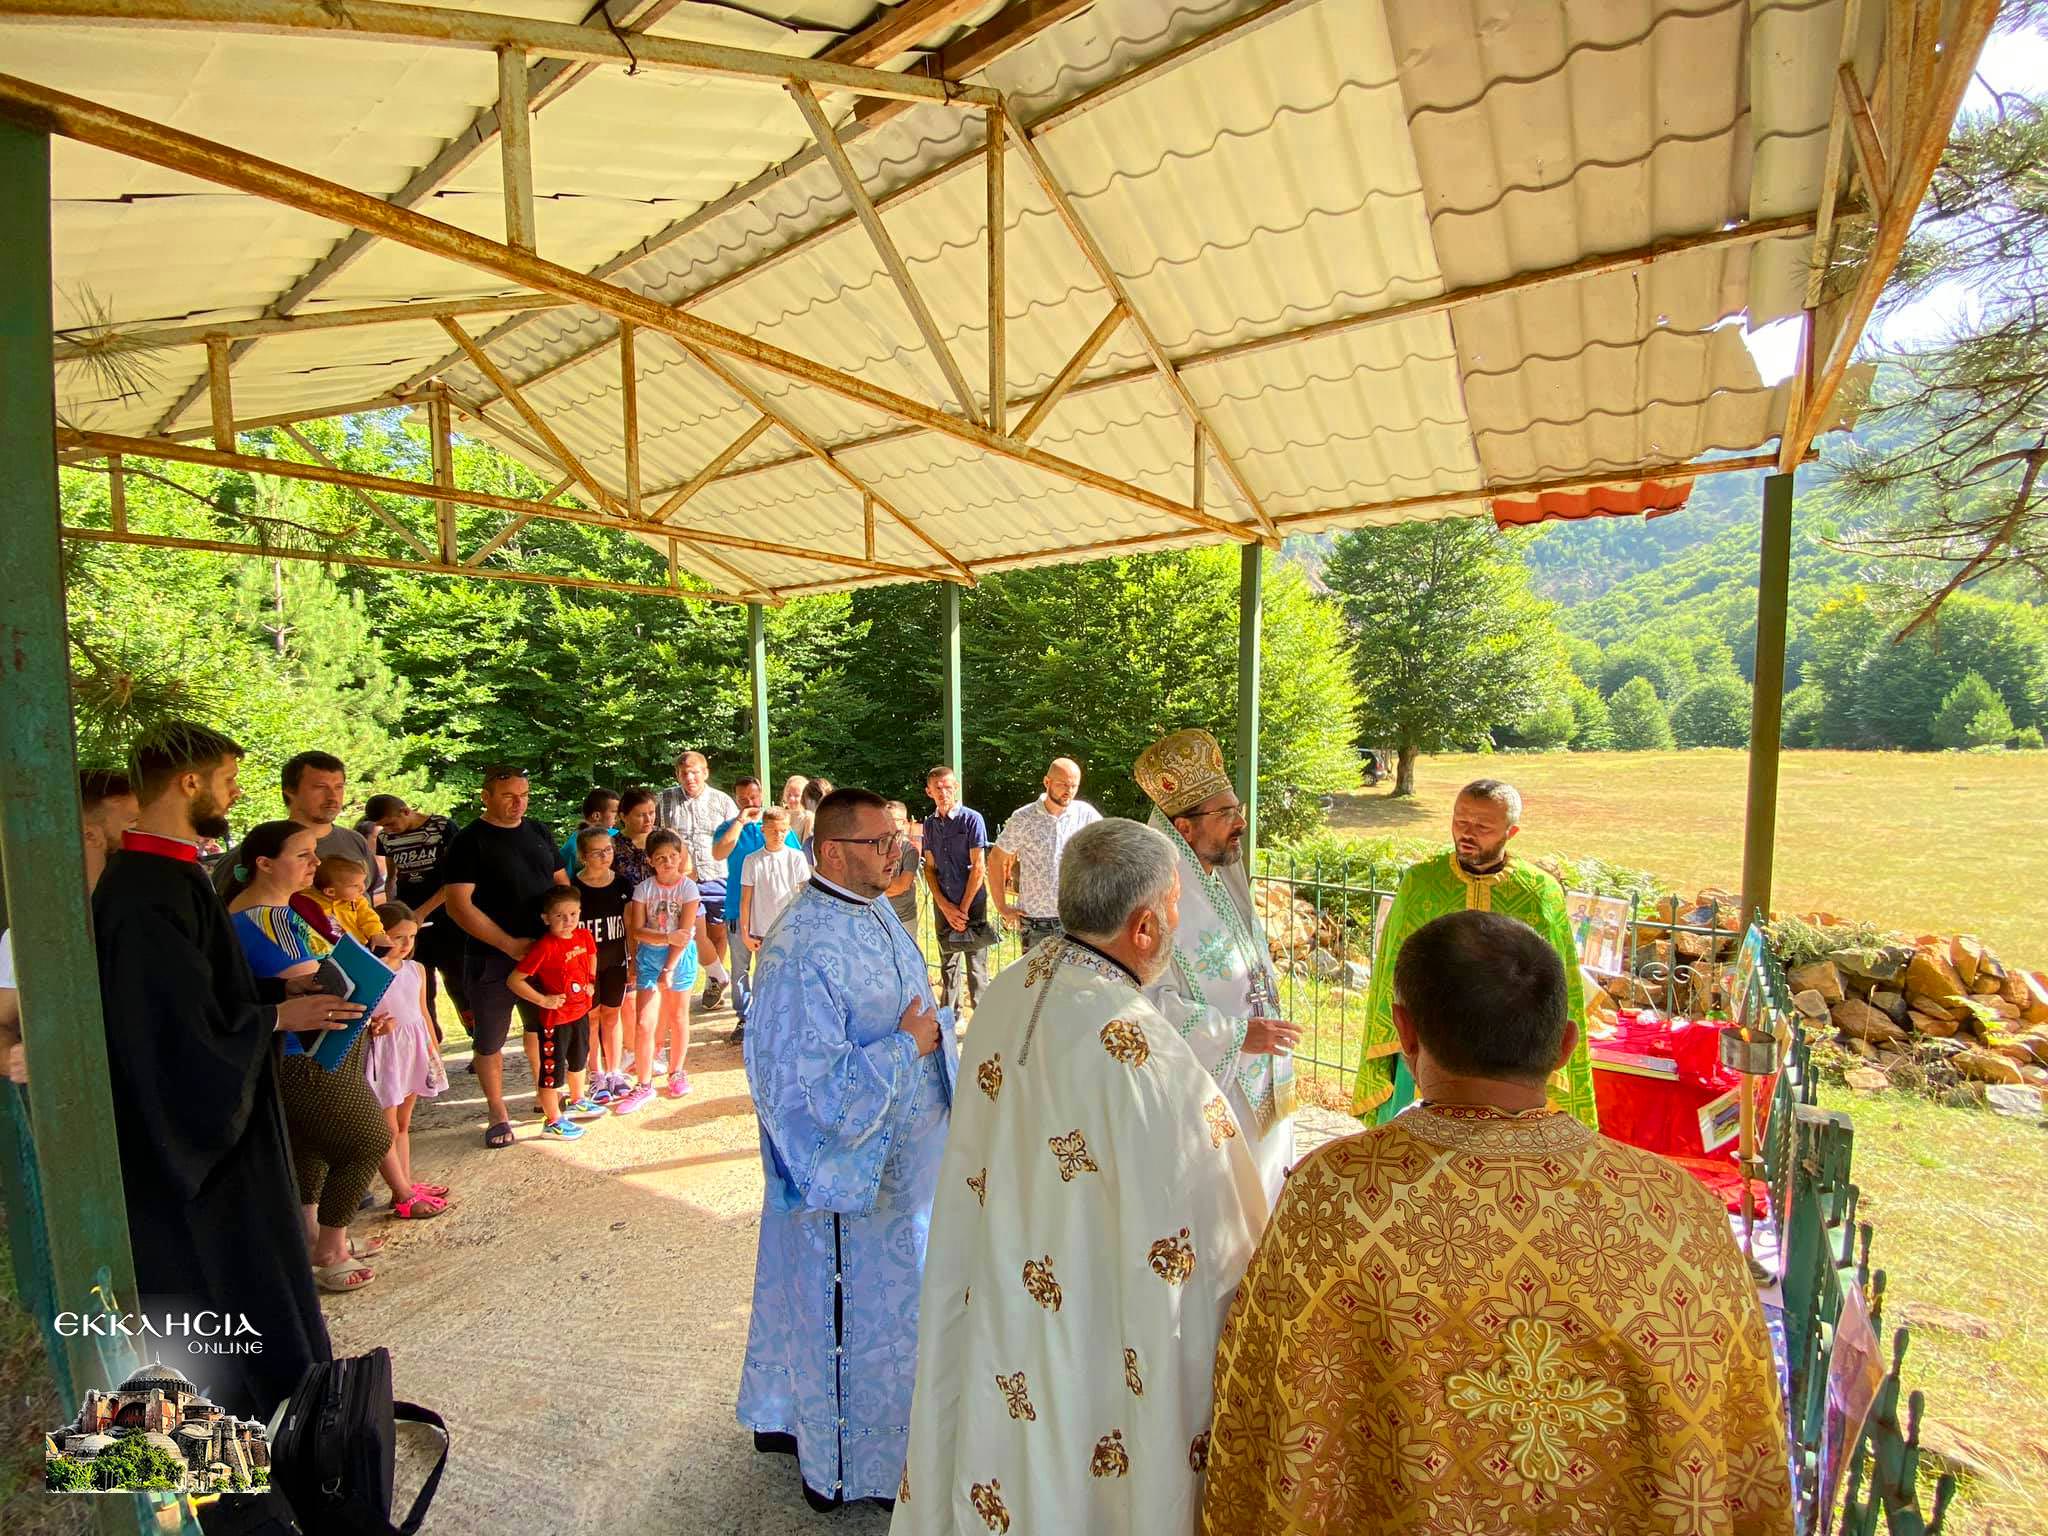 Θεία Λειτουργία σε κιόσκι εκκλησία μέσα στο δάσος της Αλβανίας